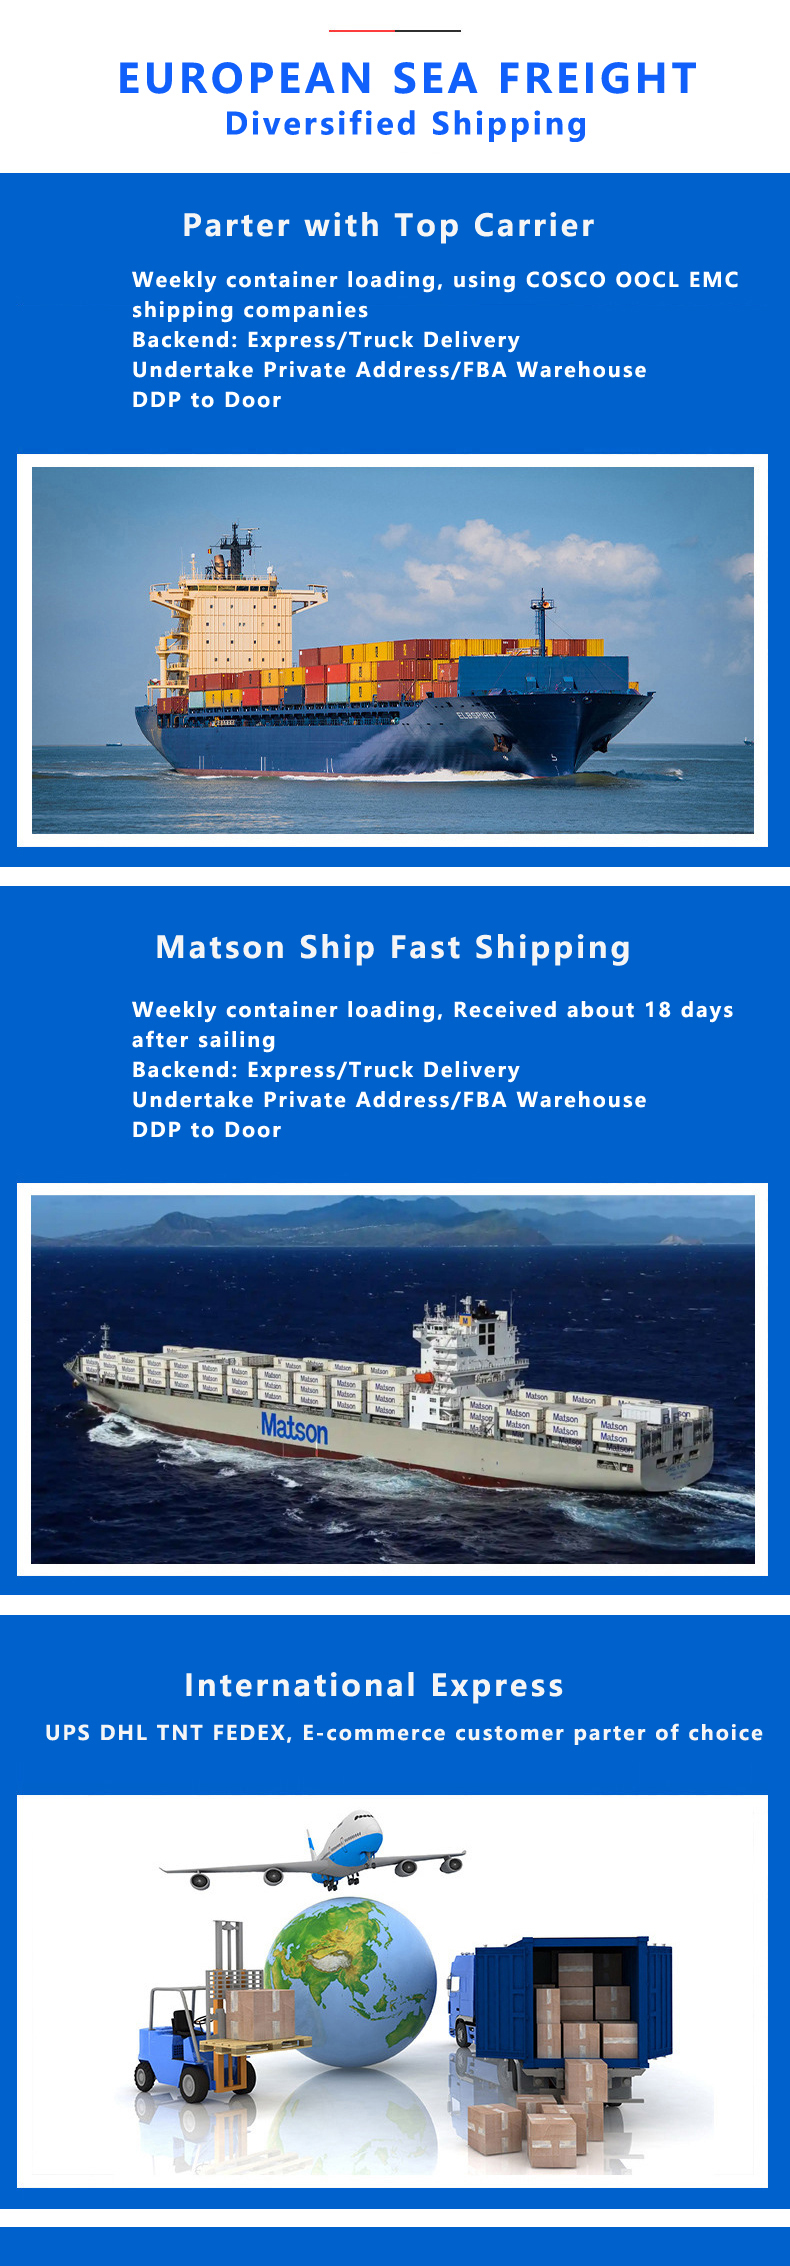 European sea freight